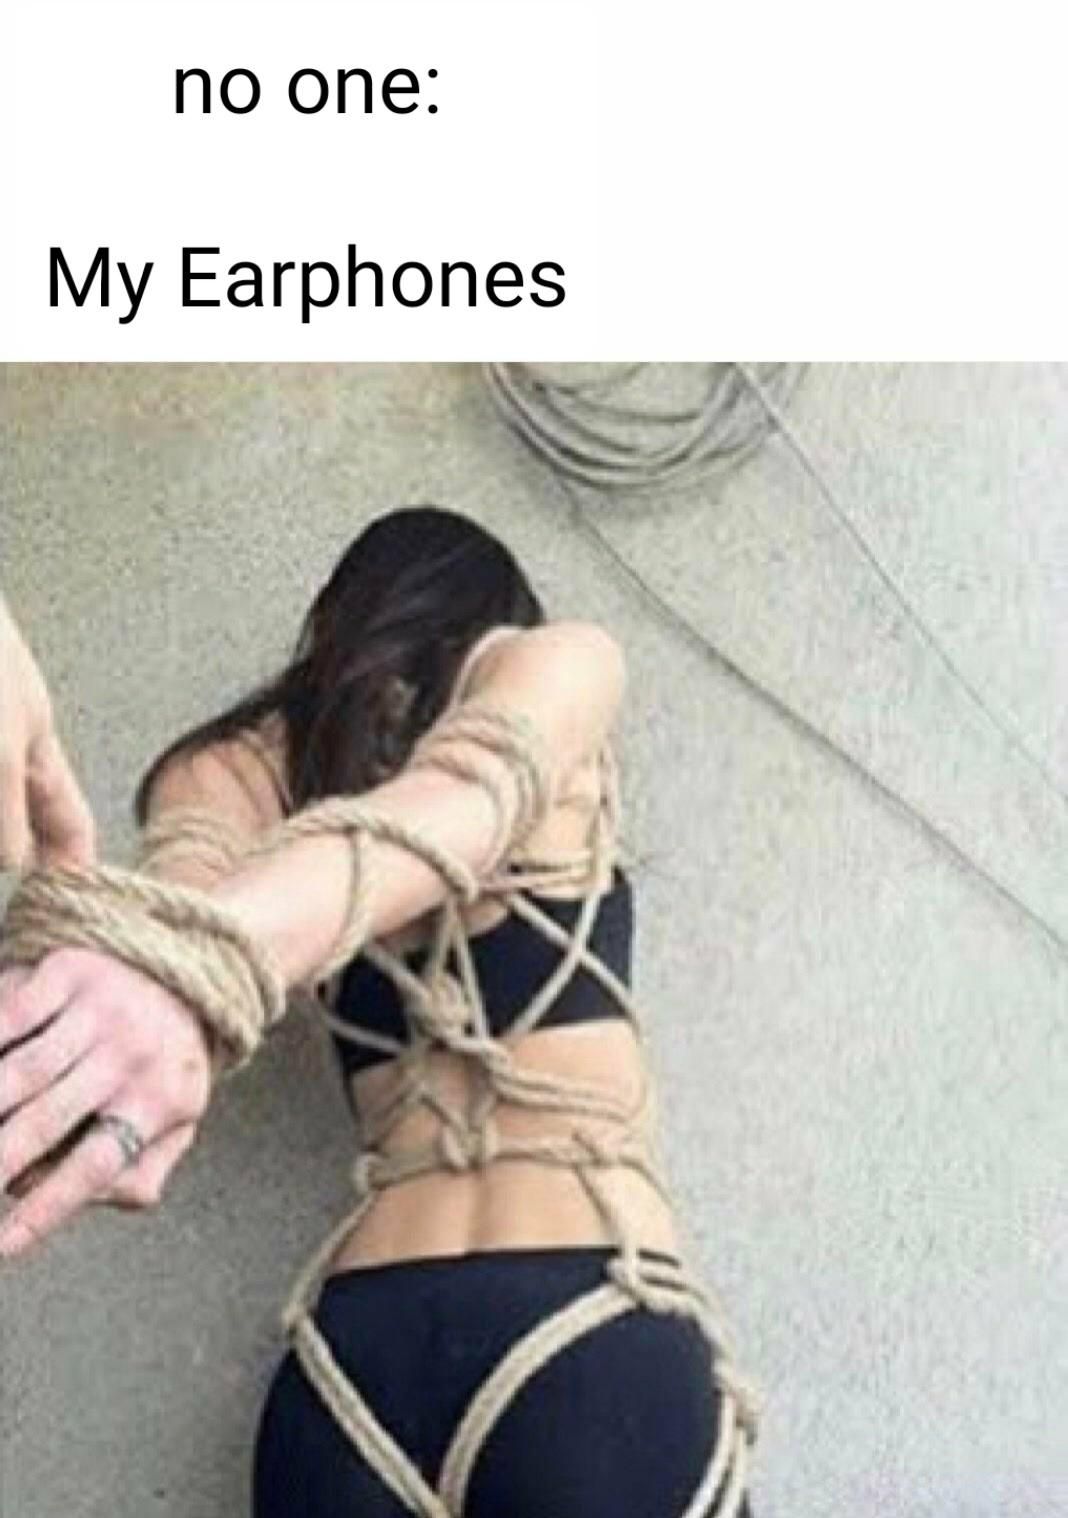 Never put earphones in your pockets